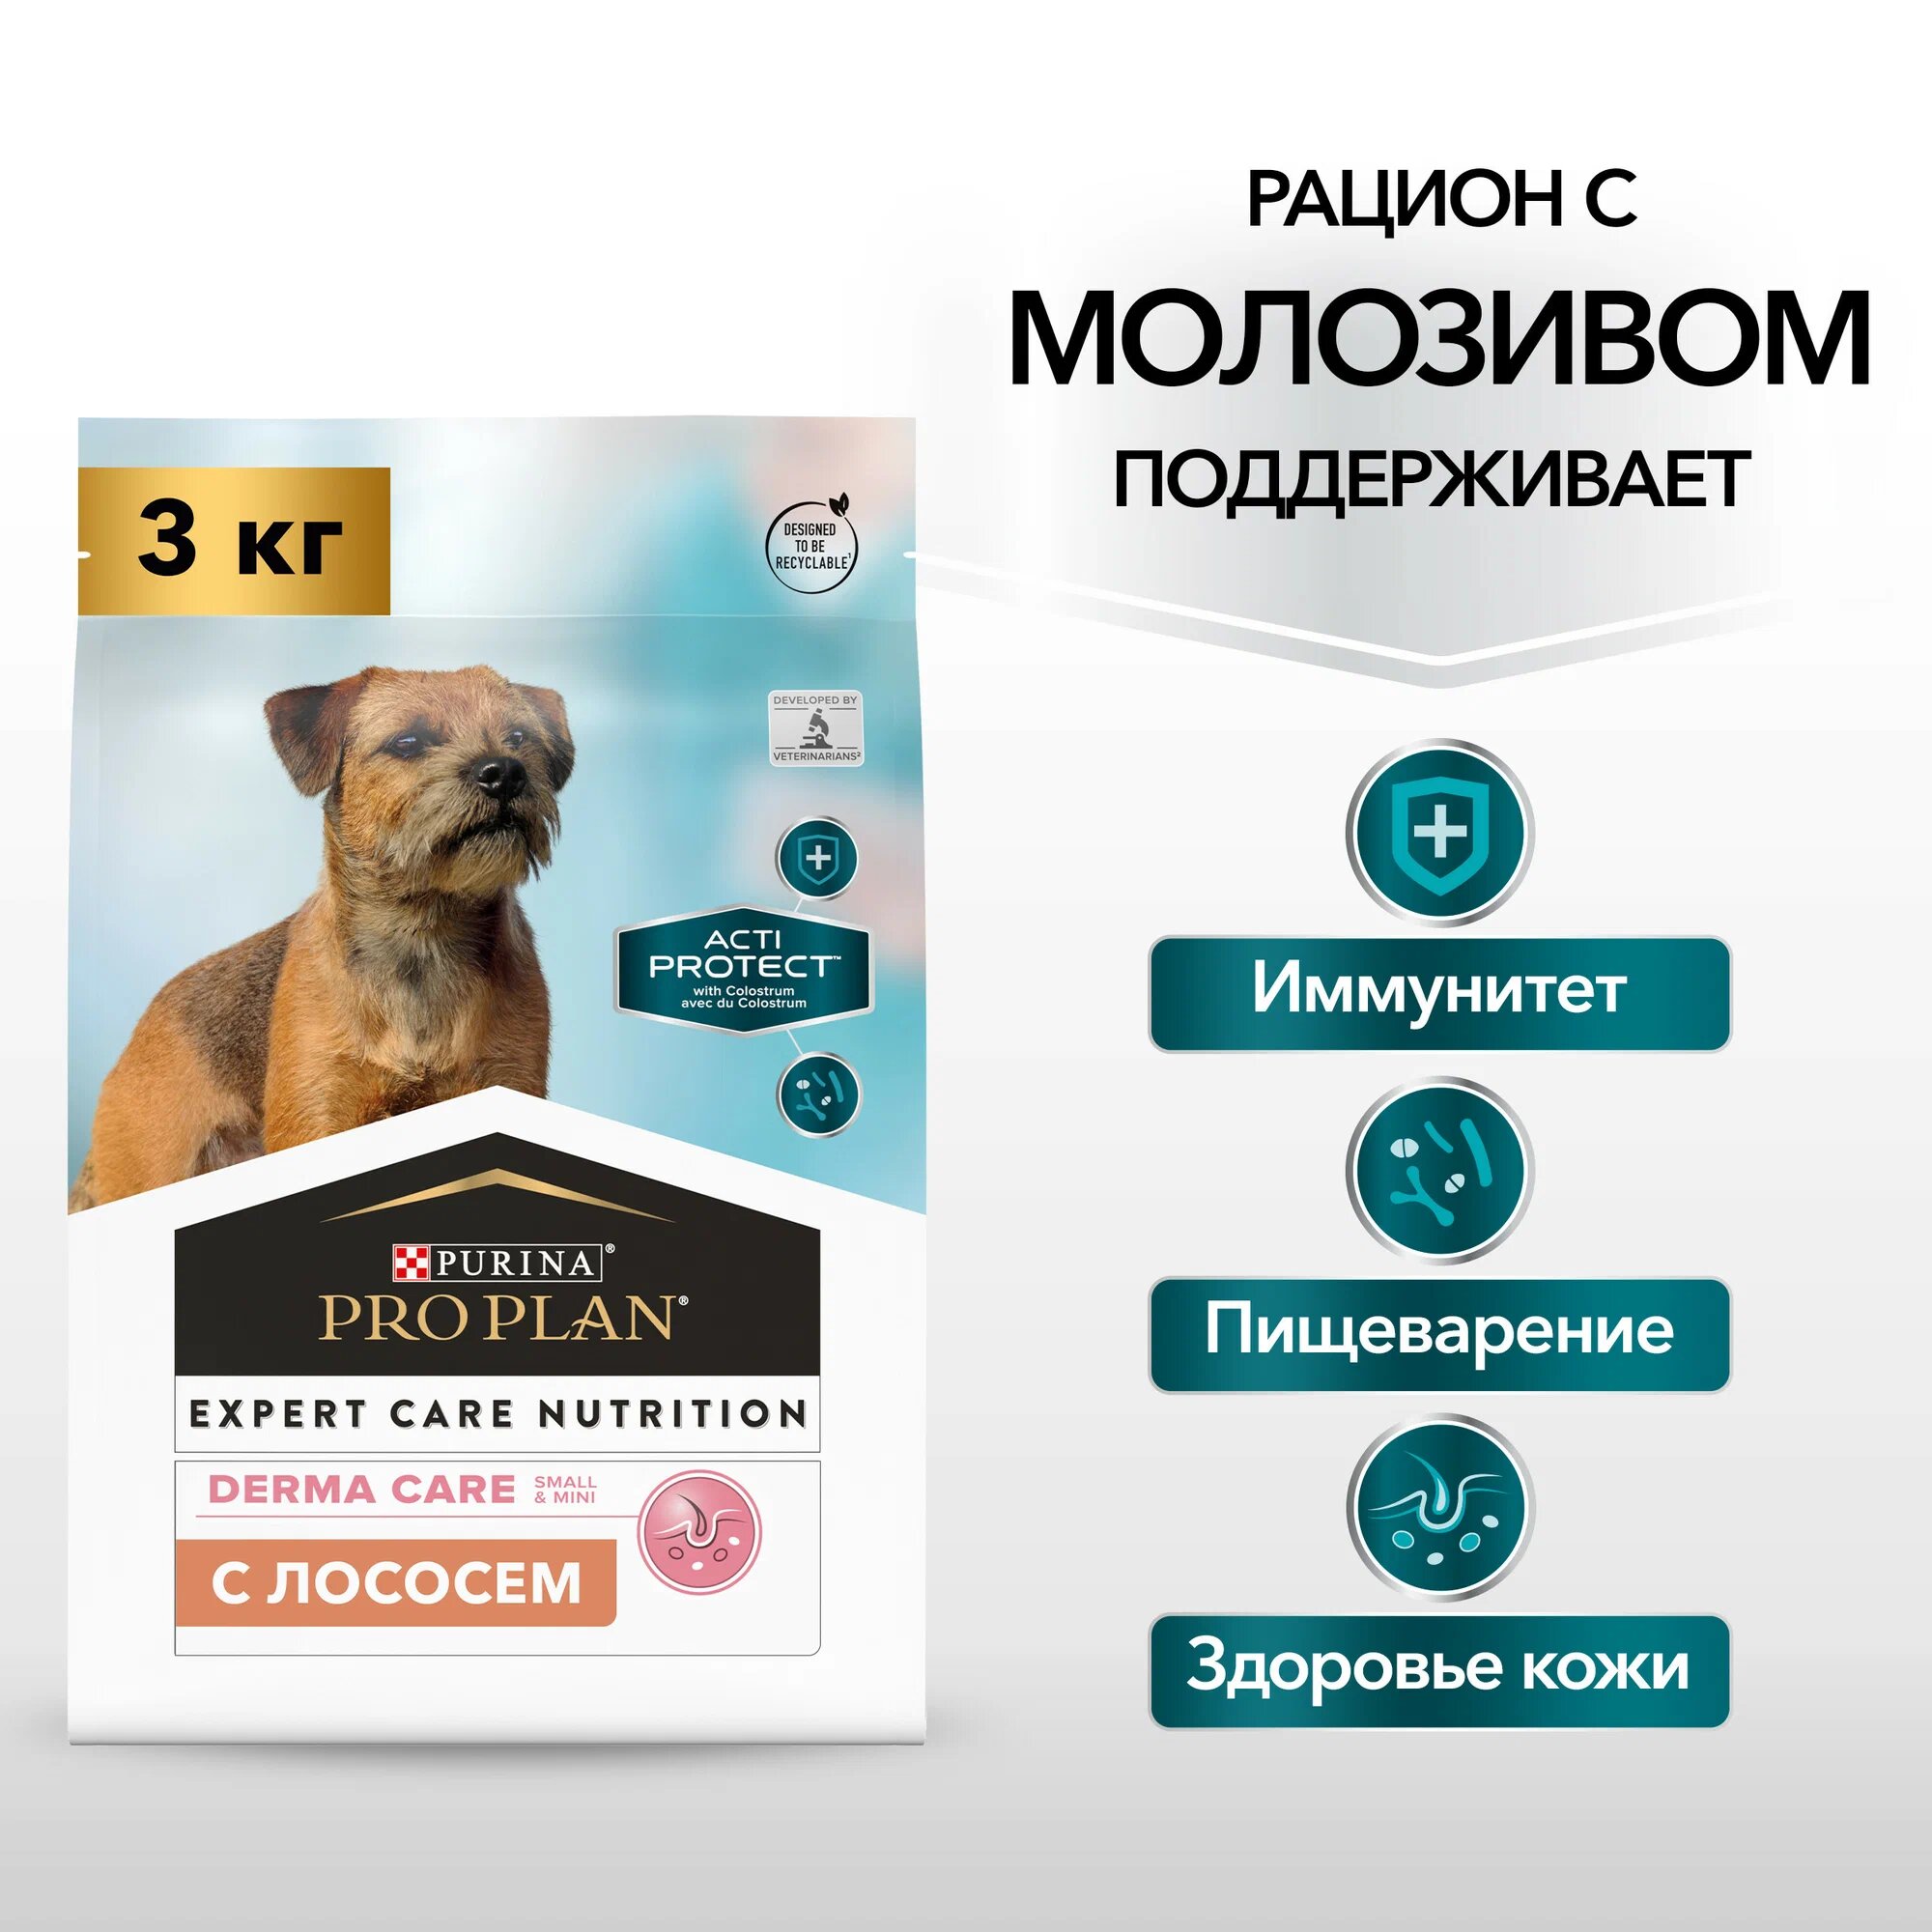 Pro Plan Acti Protect корм для собак малых пород, с чувствительной кожей, с лососем 3 кг